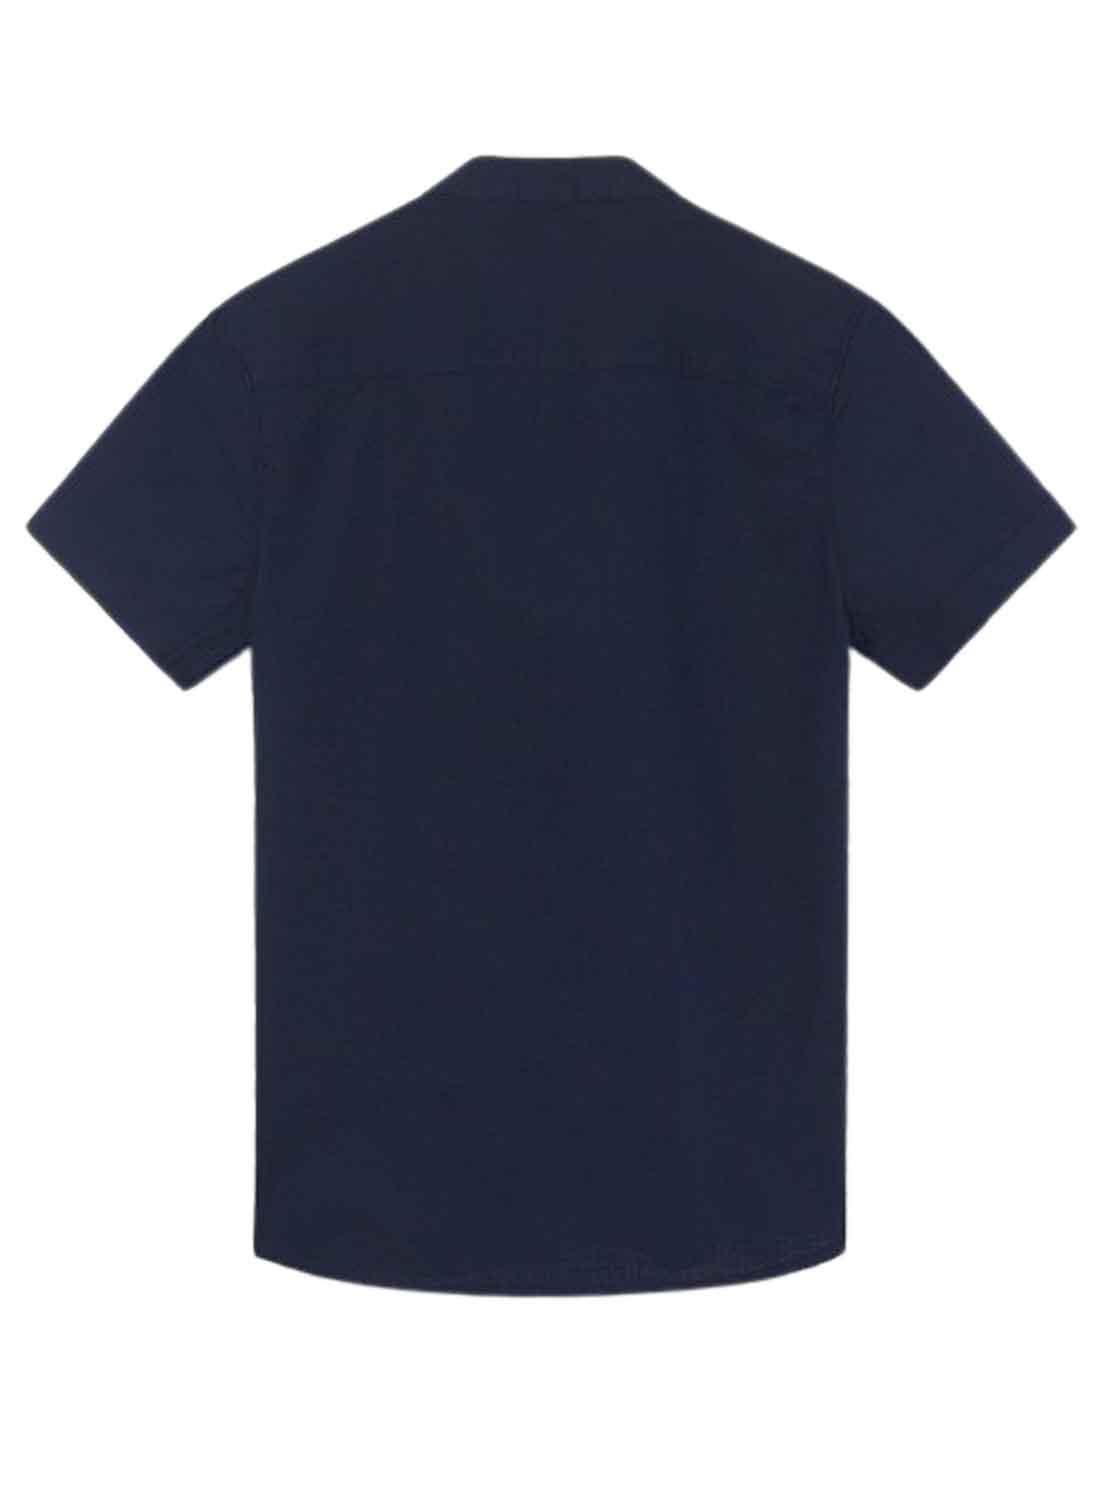 Camicia Mayoral Cuello Mao Blu Navy per Bambino